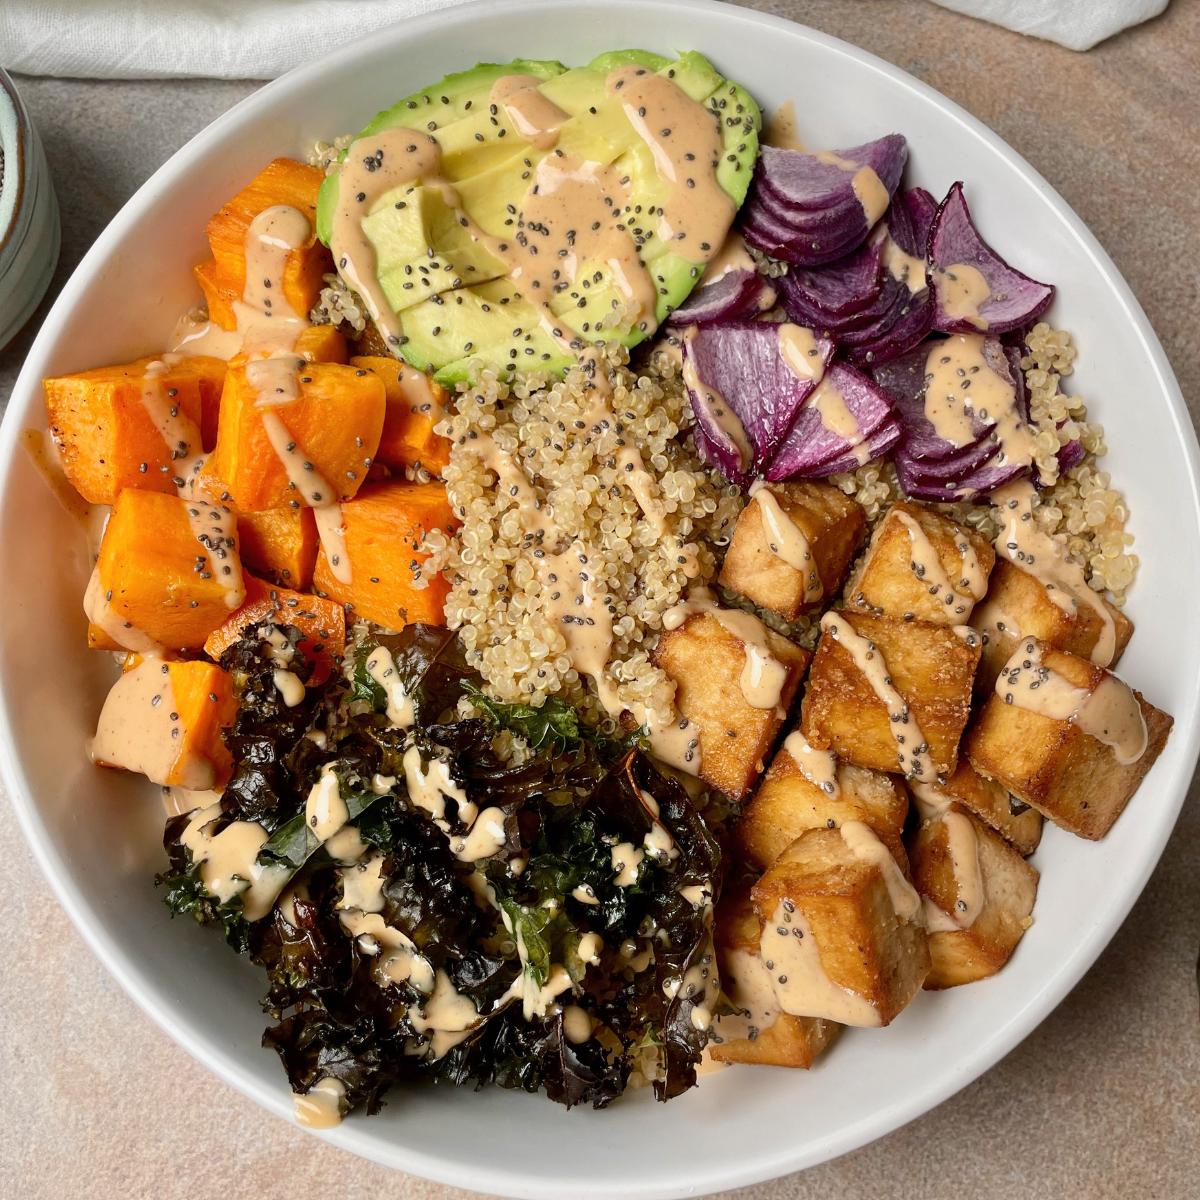 A bowl of tofu, quinoa, and vegetables.